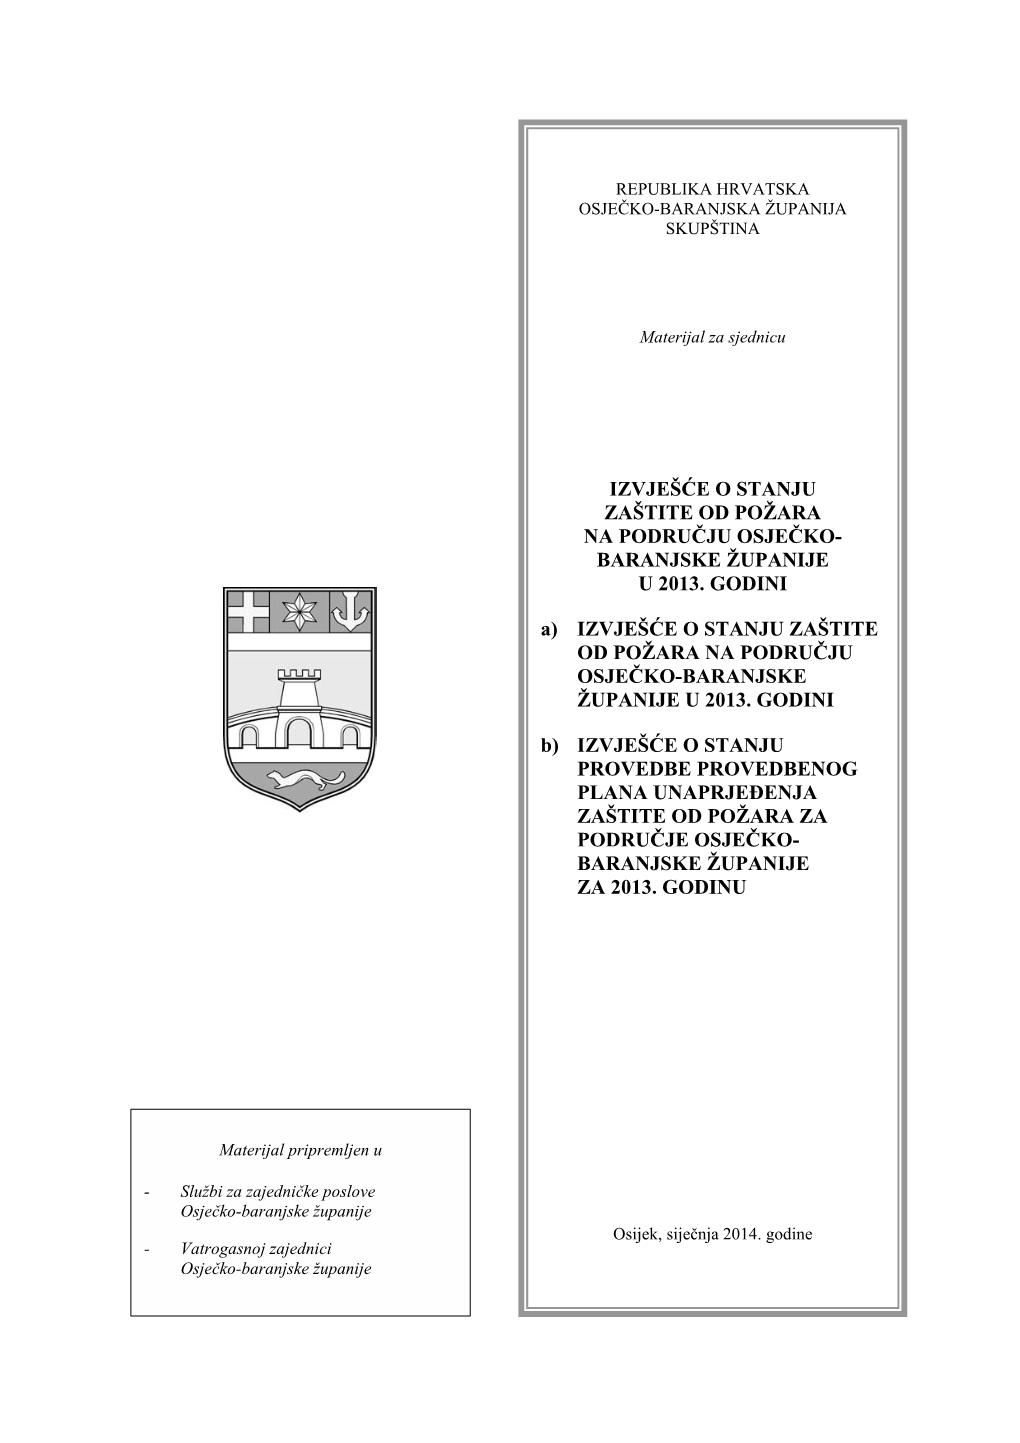 Izvješće O Stanju Zaštite Od Požara Na Području Osječko-Baranjske Županije U 2013